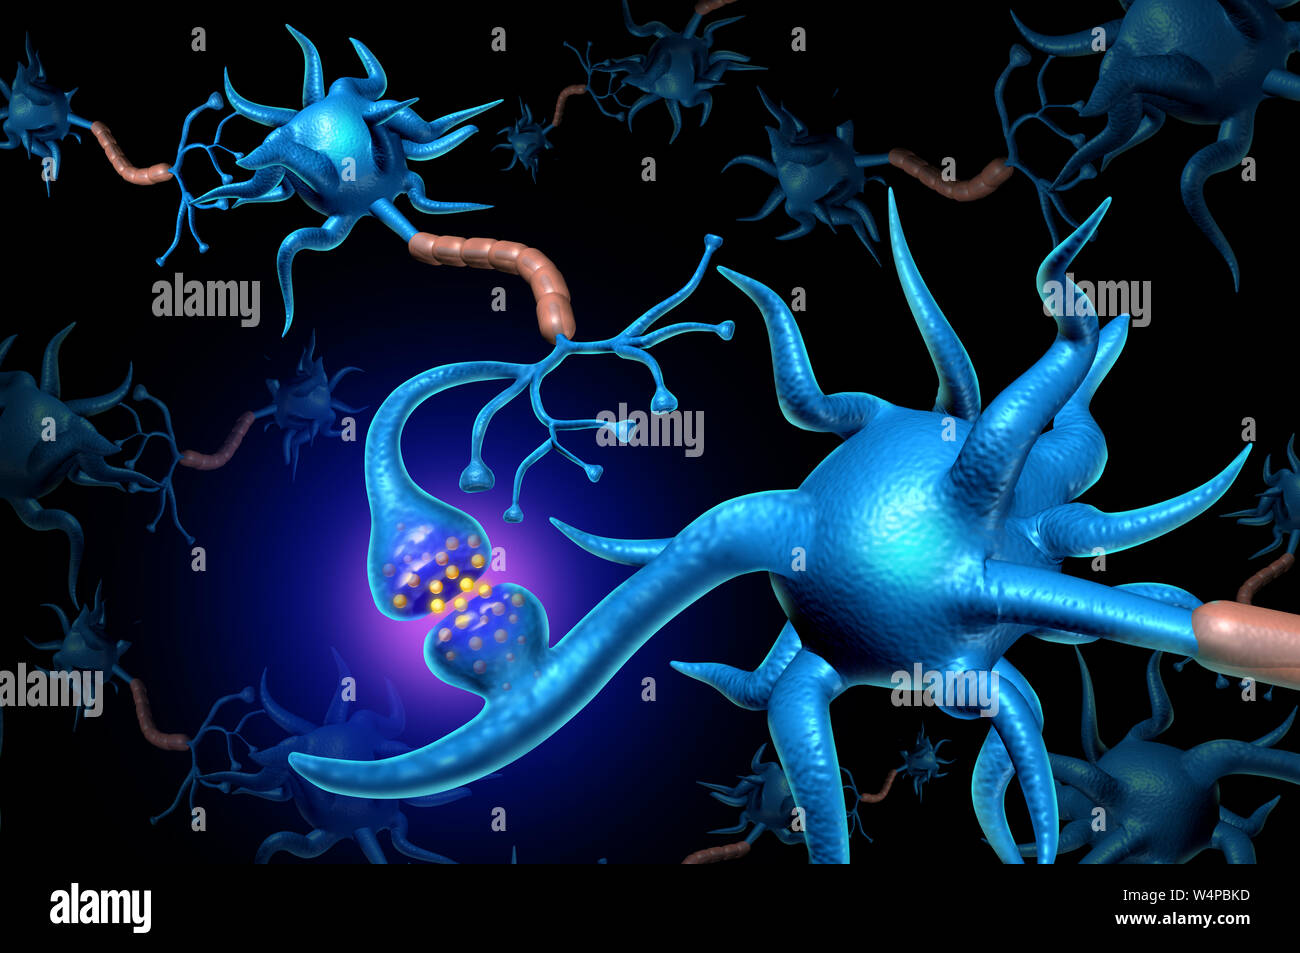 La neurona sinapsis neuronales y anatomía función enviando una señal eléctrica como neurología cerebro ciencia diagrama concepto relacionado con la memoria. Foto de stock